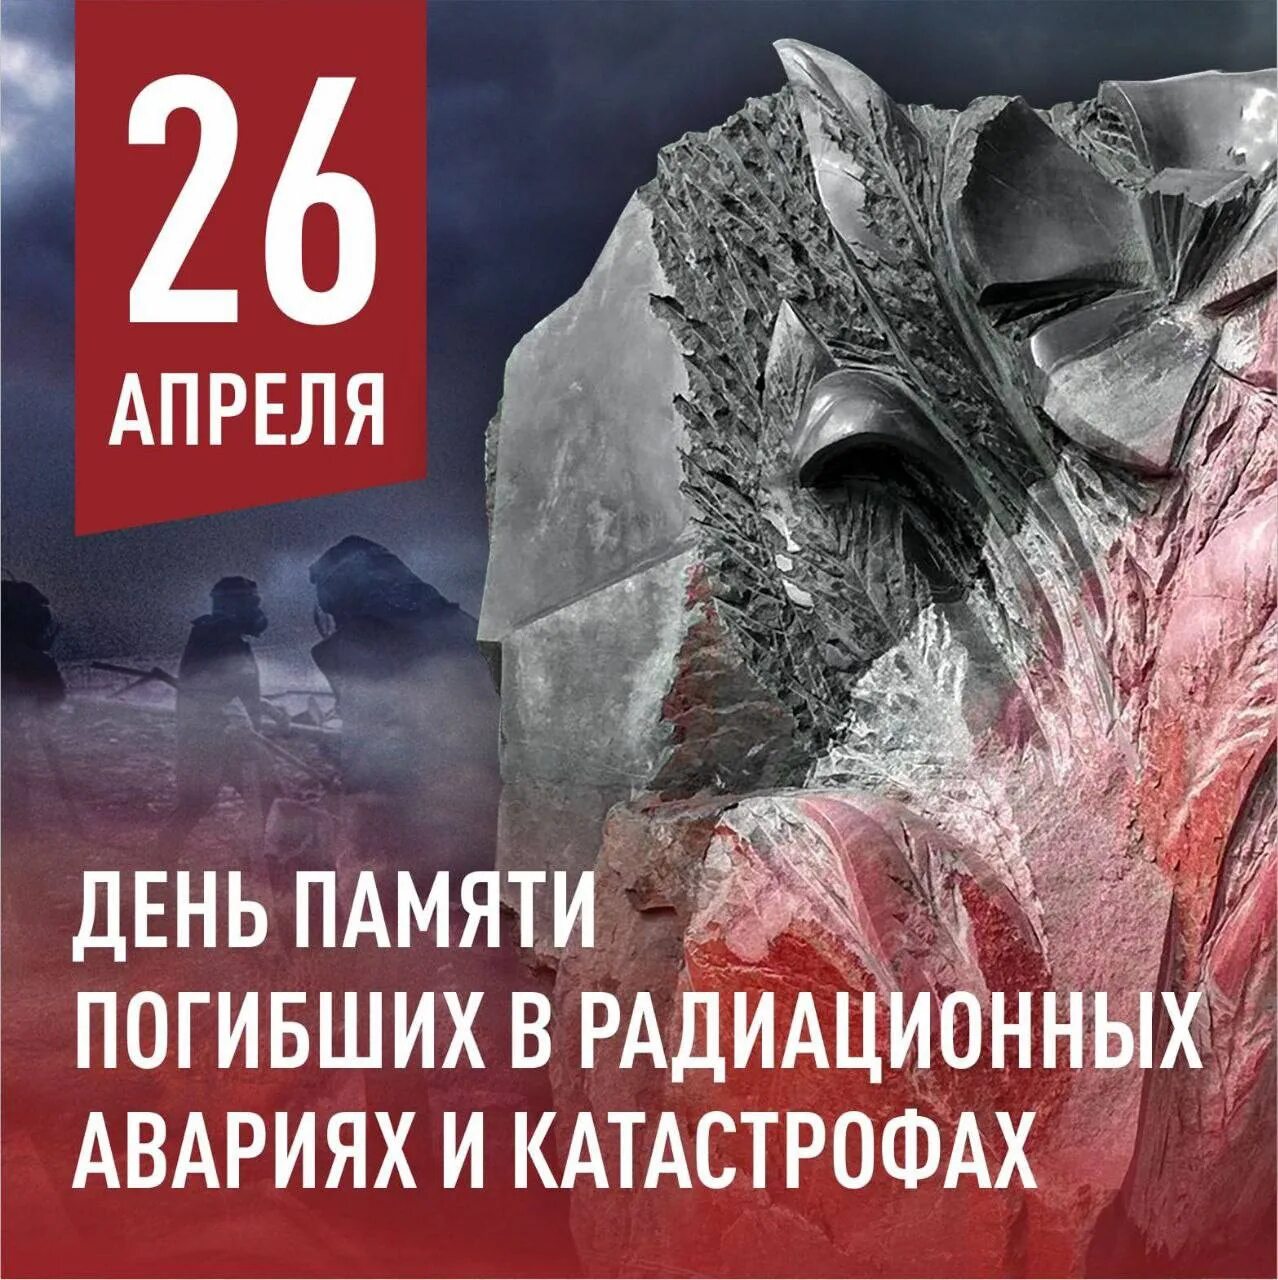 26 Апреля день памяти погибших в радиационных авариях и катастрофах. 26 Апреля день памяти. День памяти погибших в радиационных катастрофах. Чернобыль день памяти.